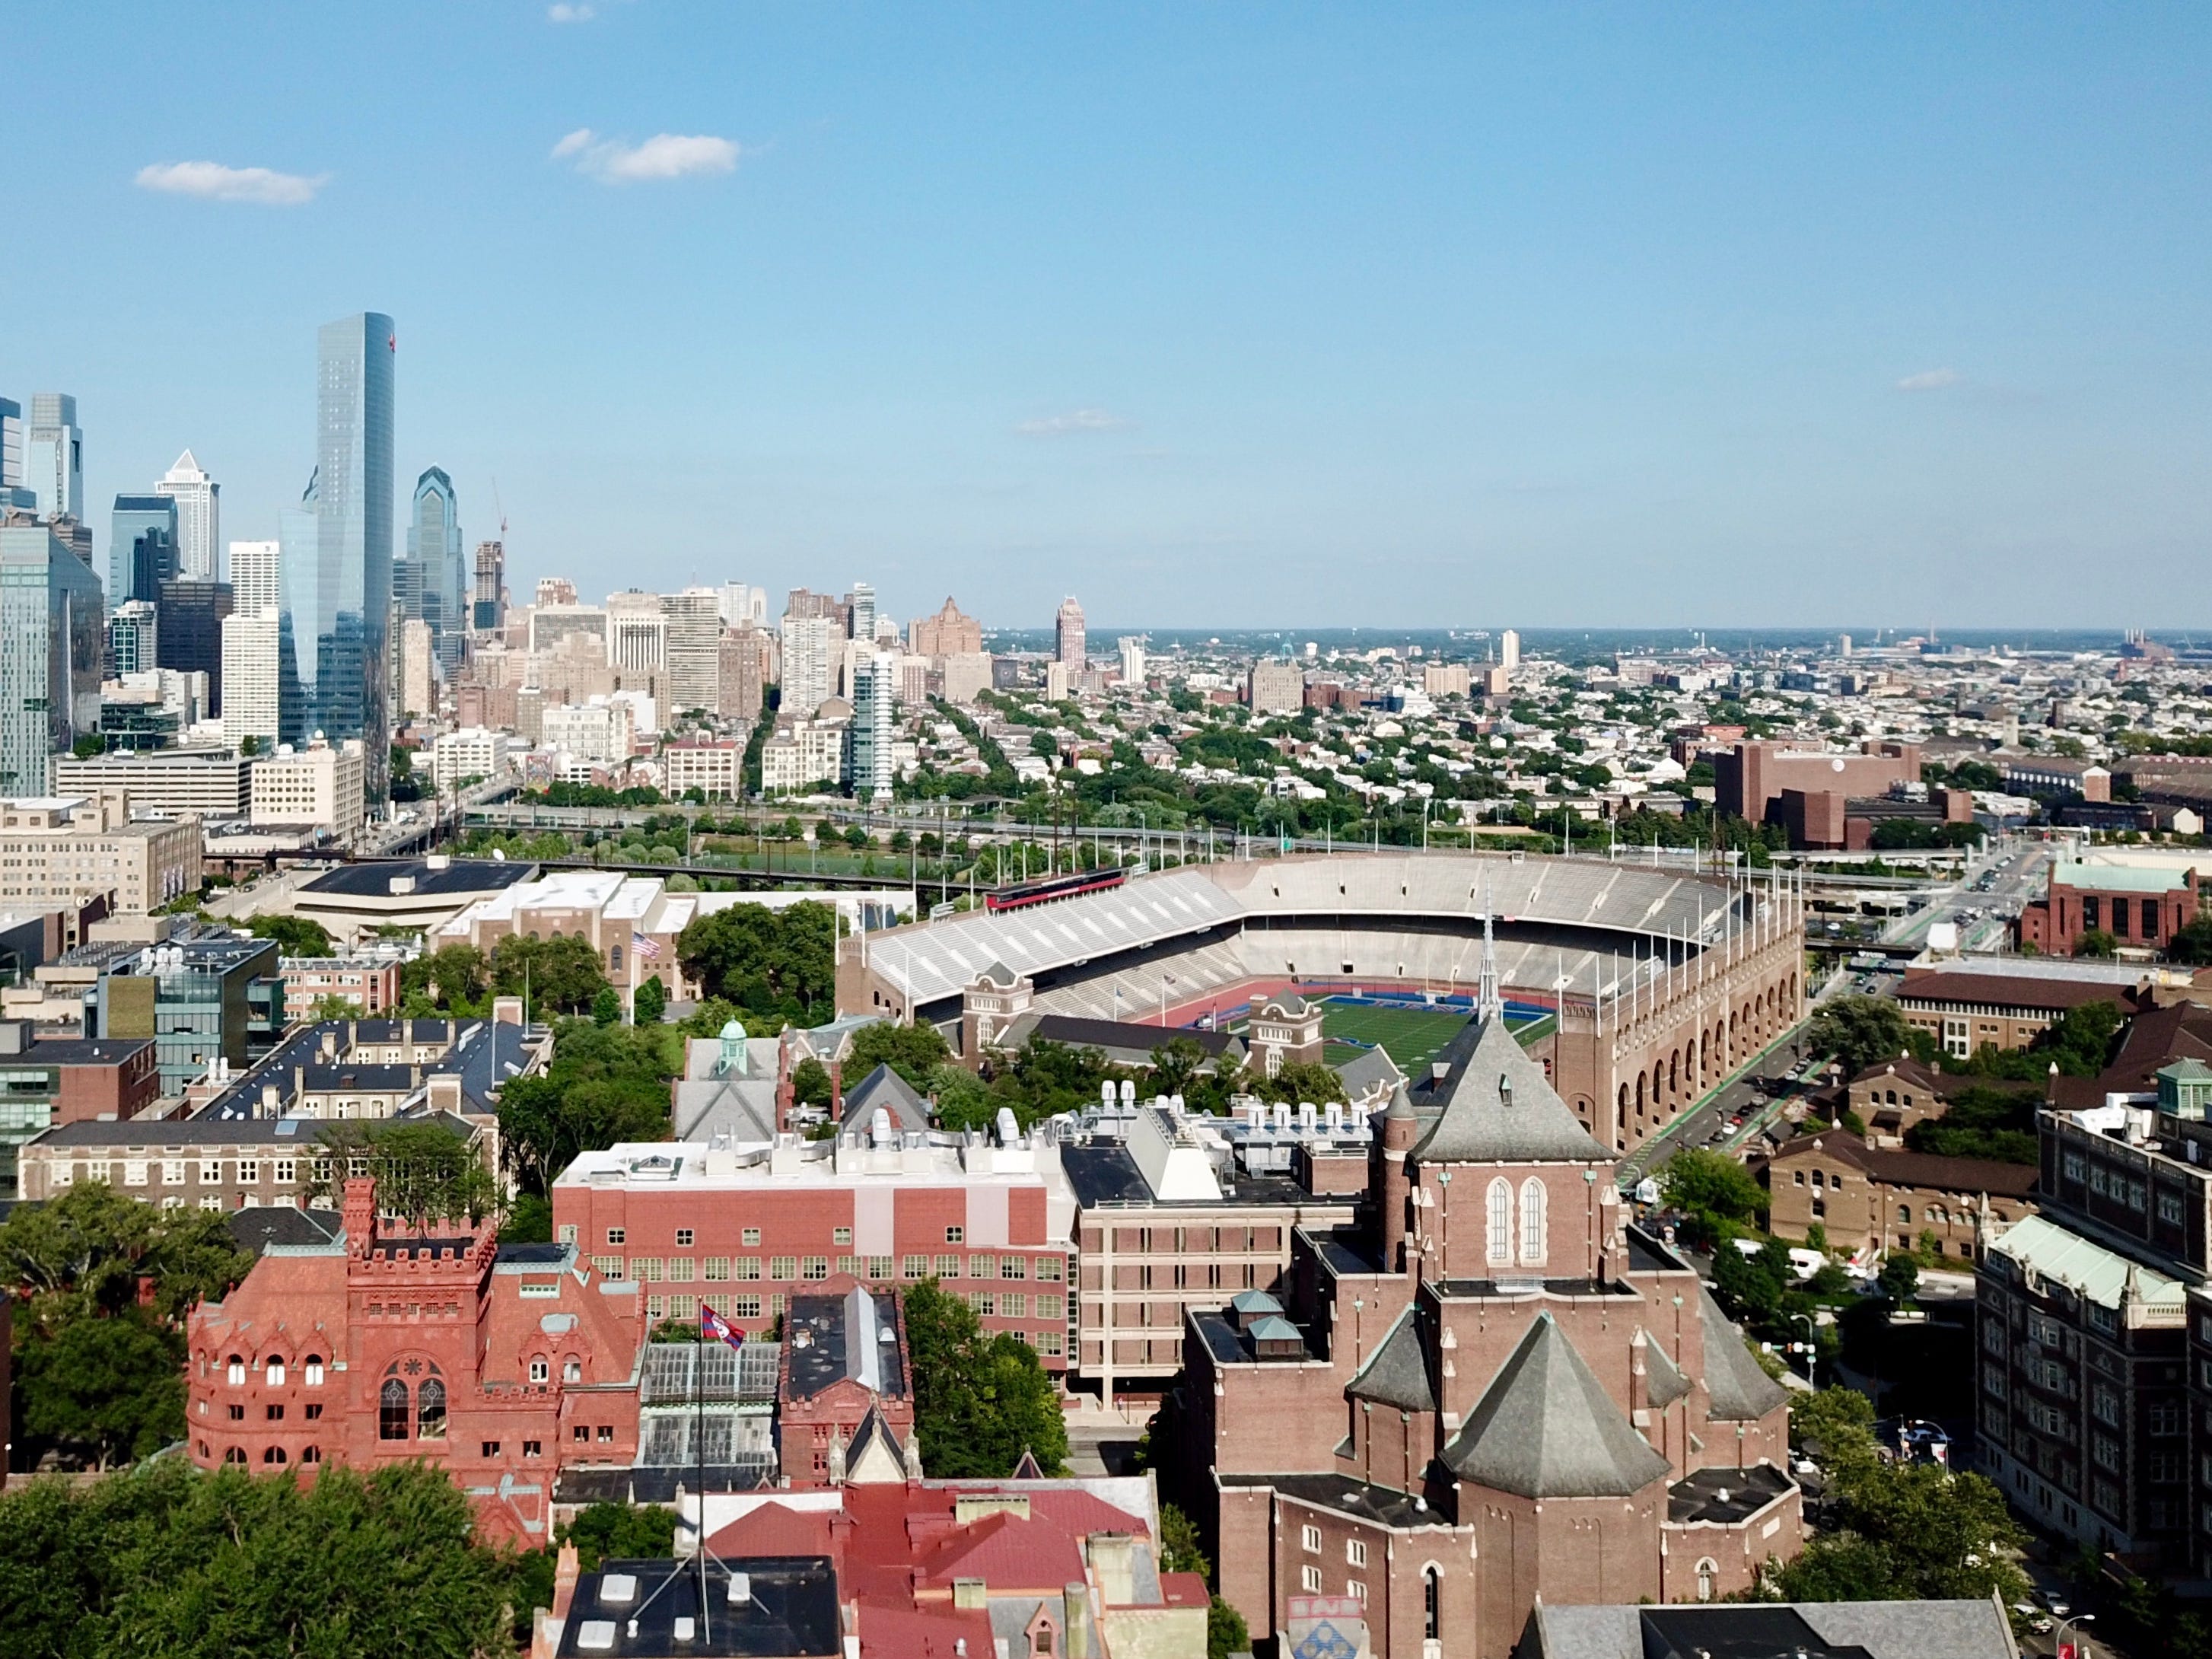 Blick auf die University of Pennsylvania mit der Skyline von Philadelphia dahinter.